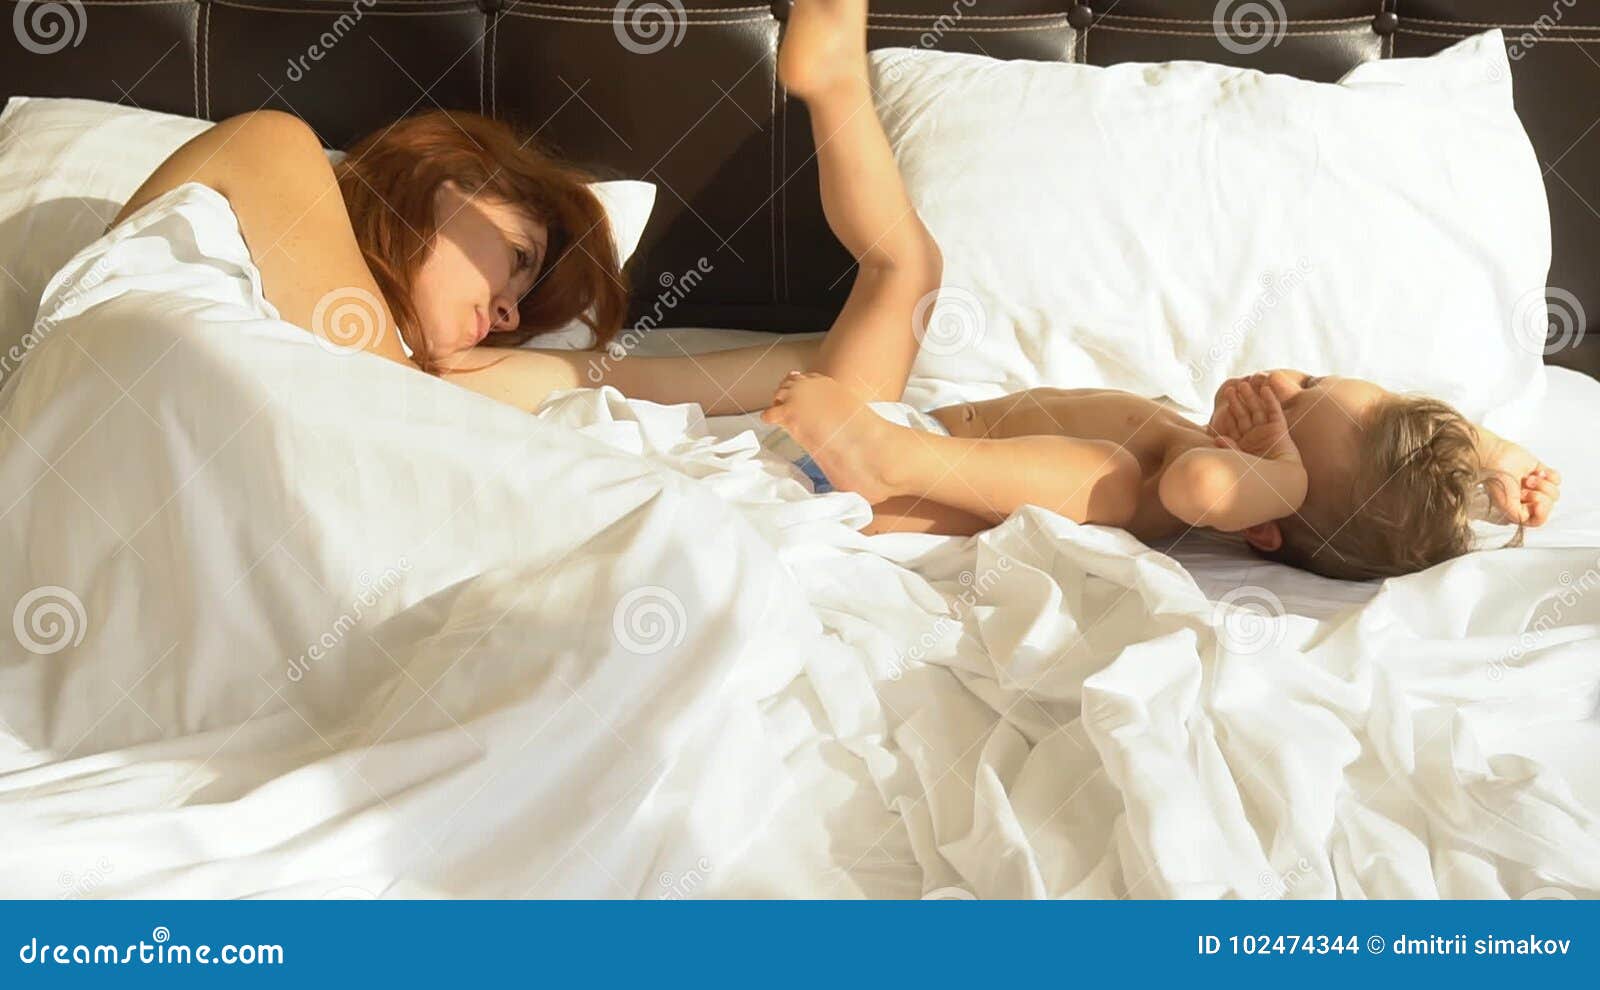 с мамой спит в одной постели эротика фото 65